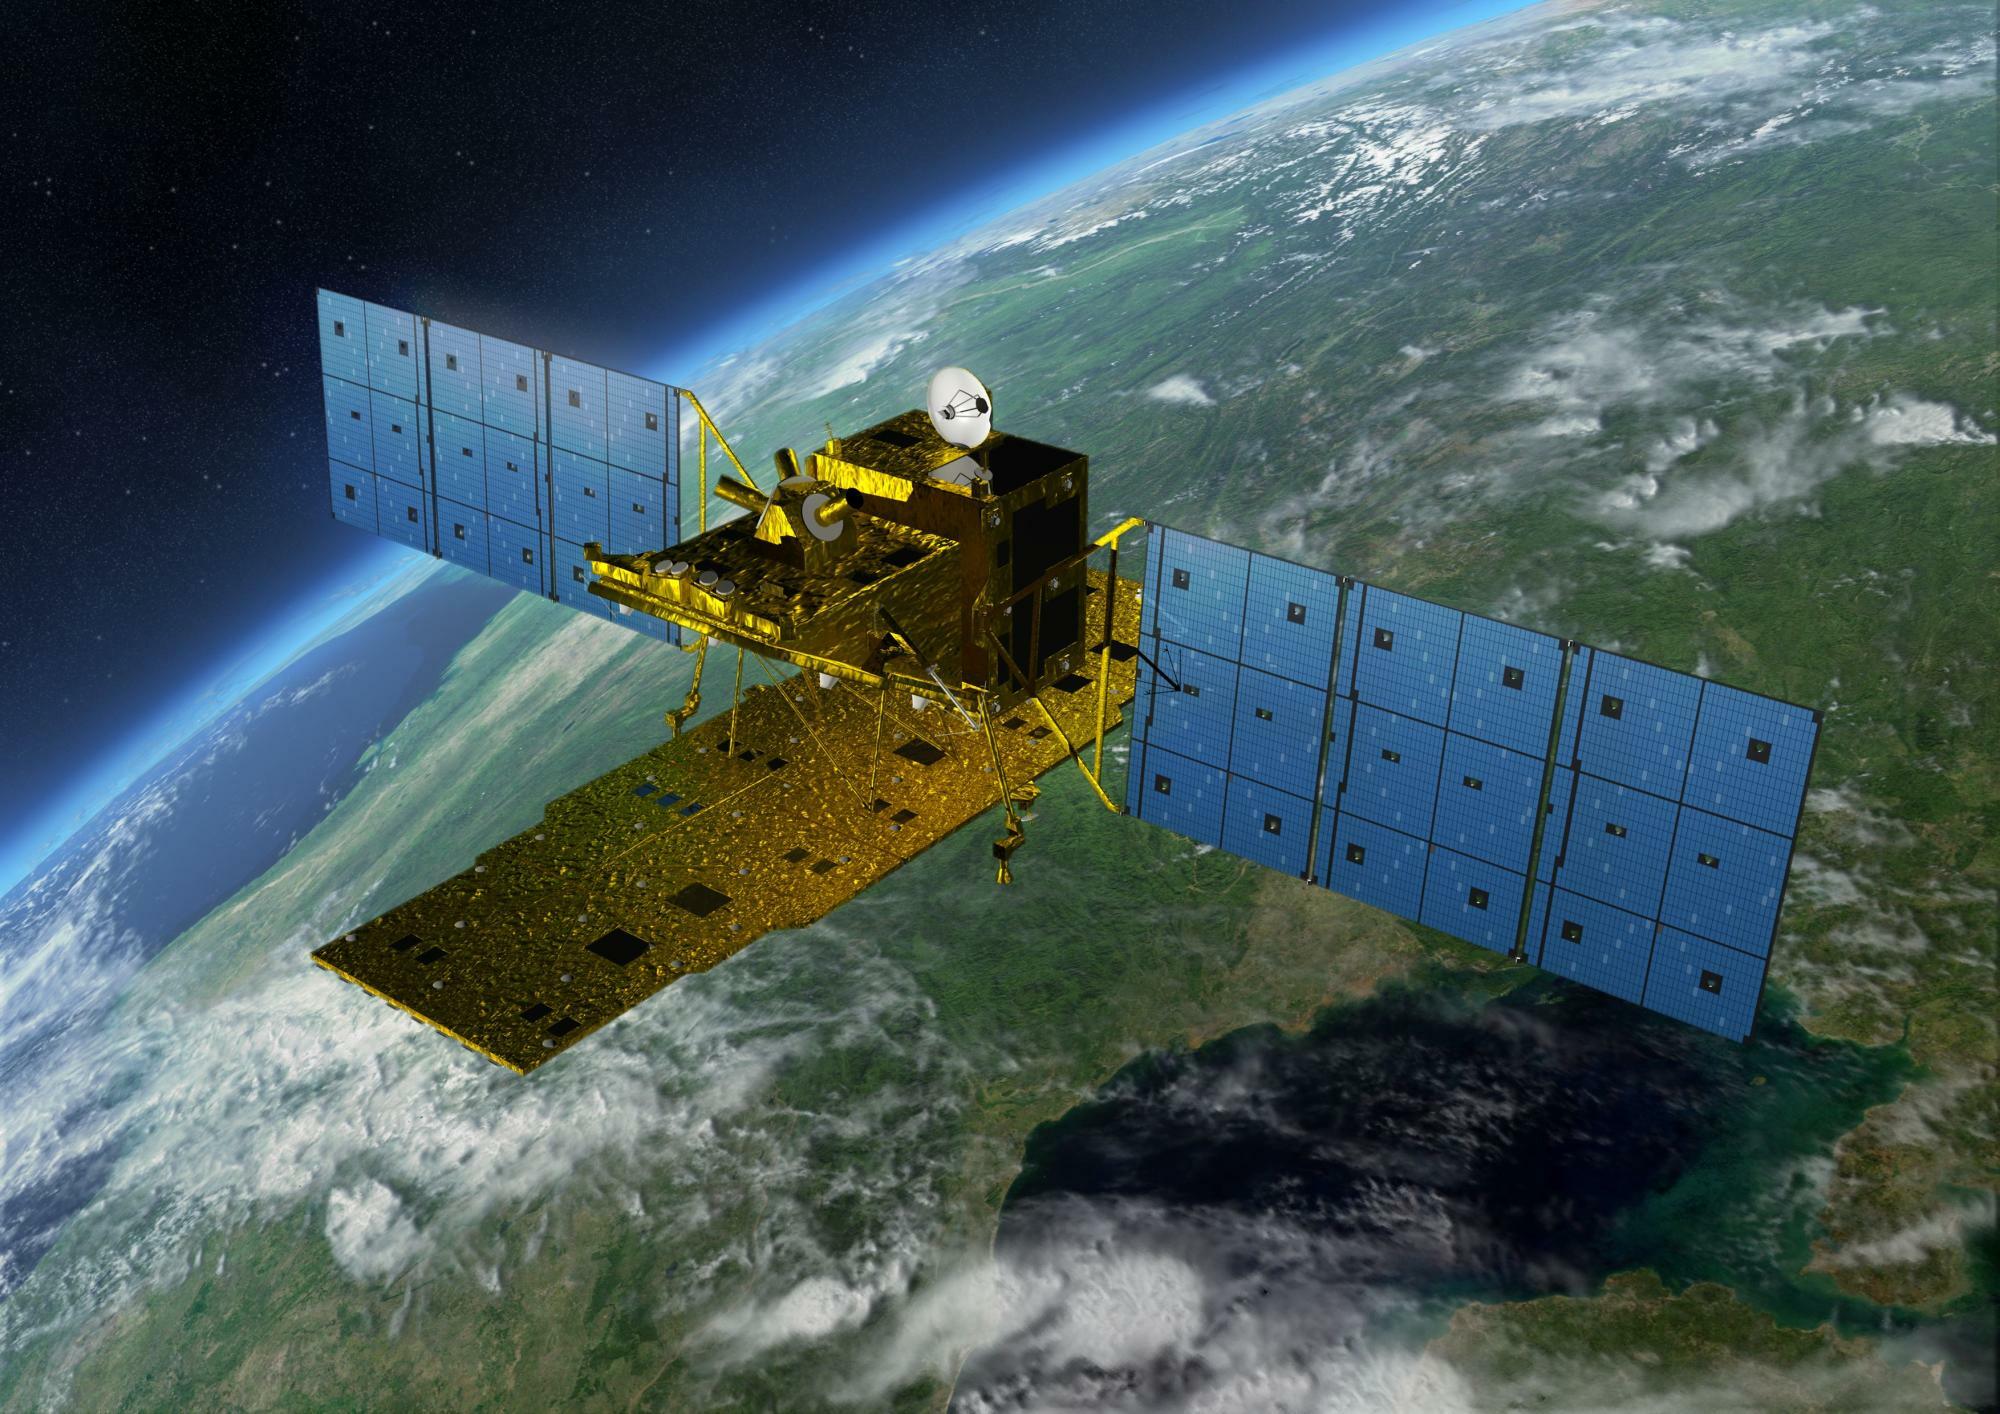 陸域観測技術衛星2号「だいち2号」出典:JAXA